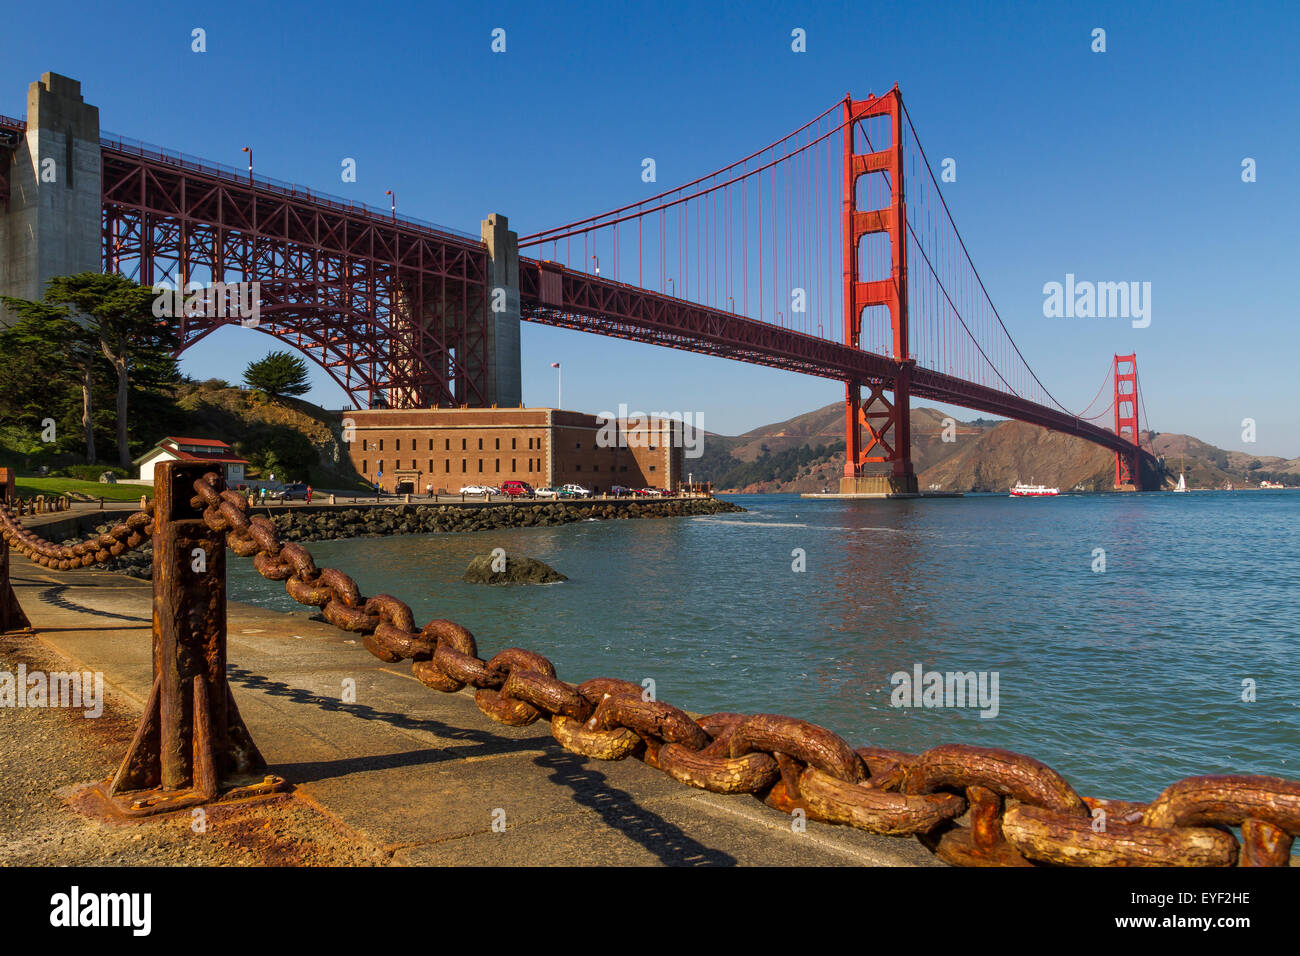 Fort Point si trova sotto il Golden Gate Bridge che ha aperto nel 1937 collegando San Francisco a Marin County, San Francisco, California Foto Stock